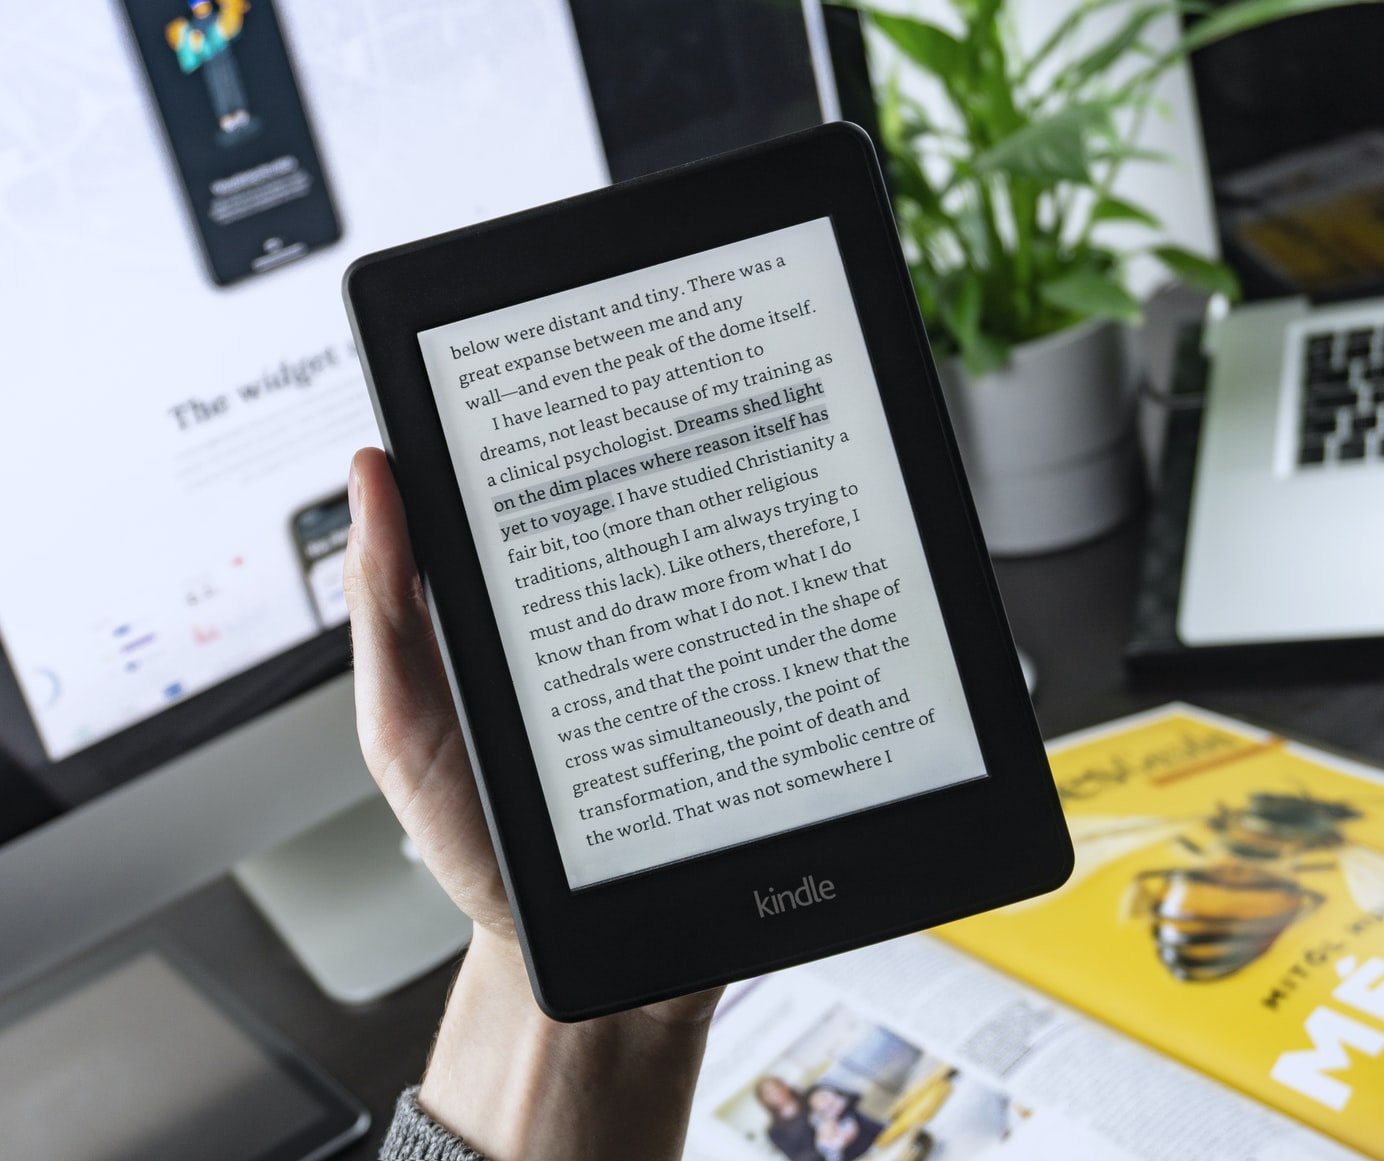 Conheça as novidades dos novos Kindle Paperwhite e saiba qual o melhor modelo para você.